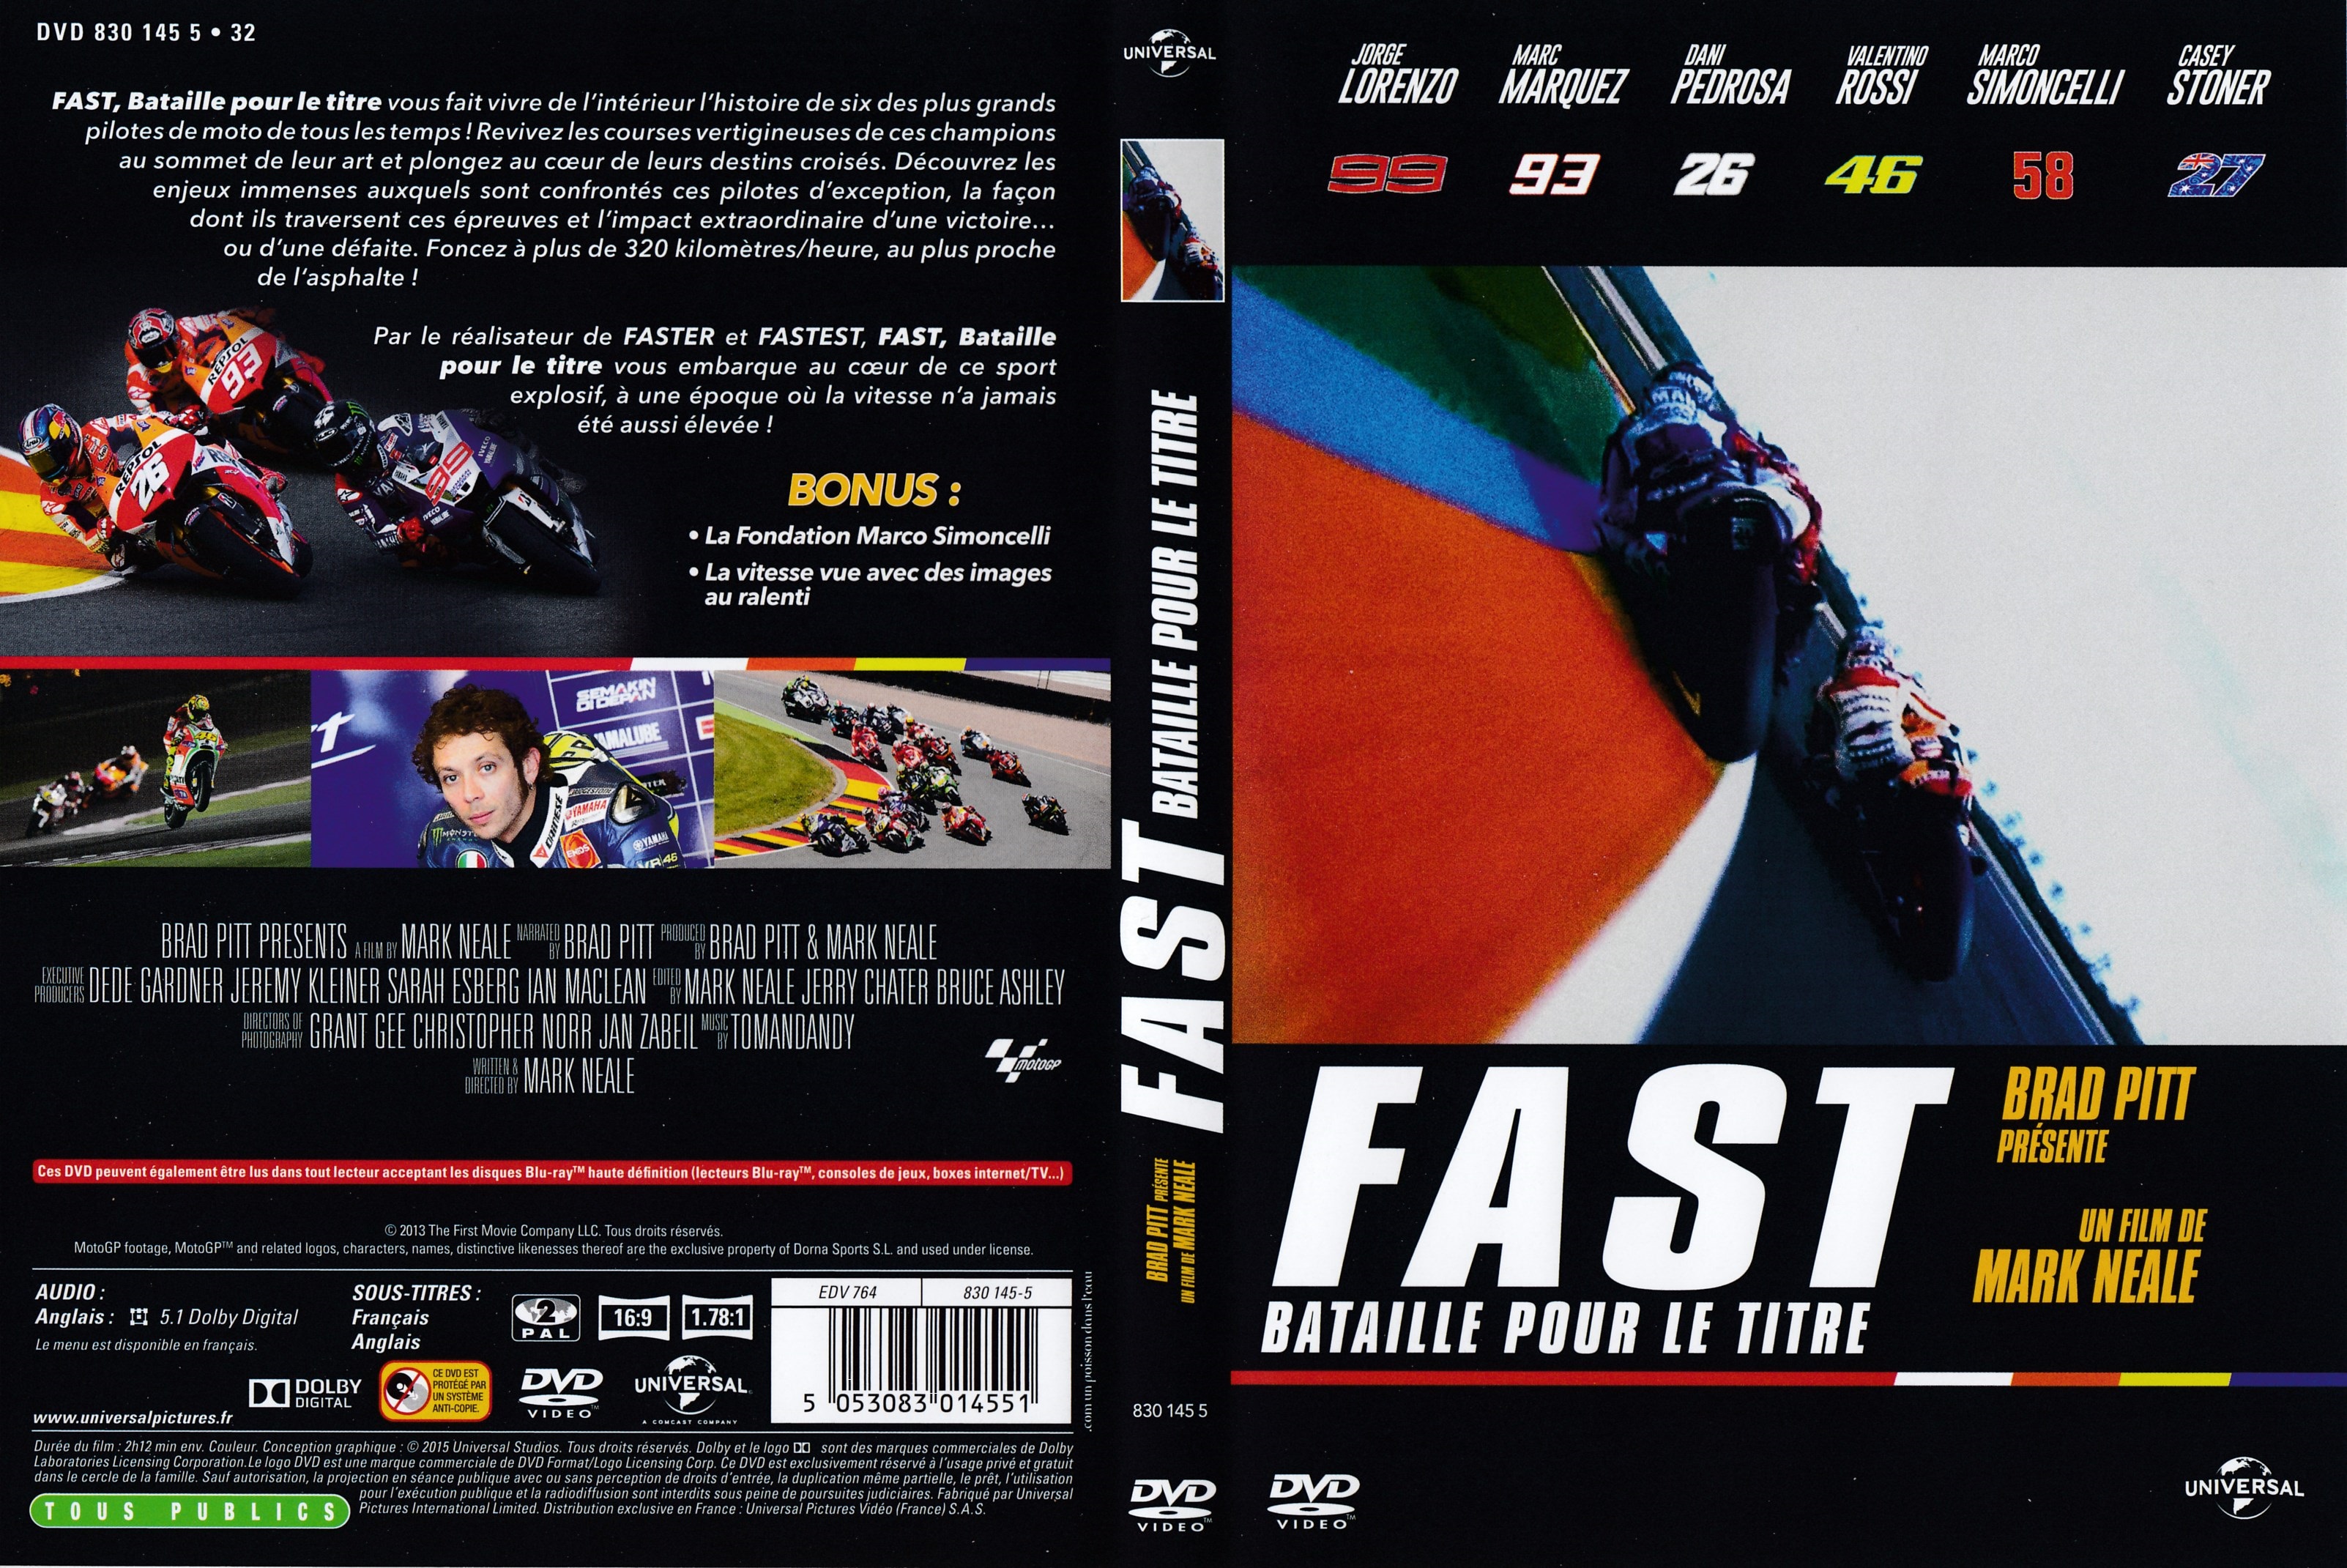 Jaquette DVD Fast bataille pour le titre